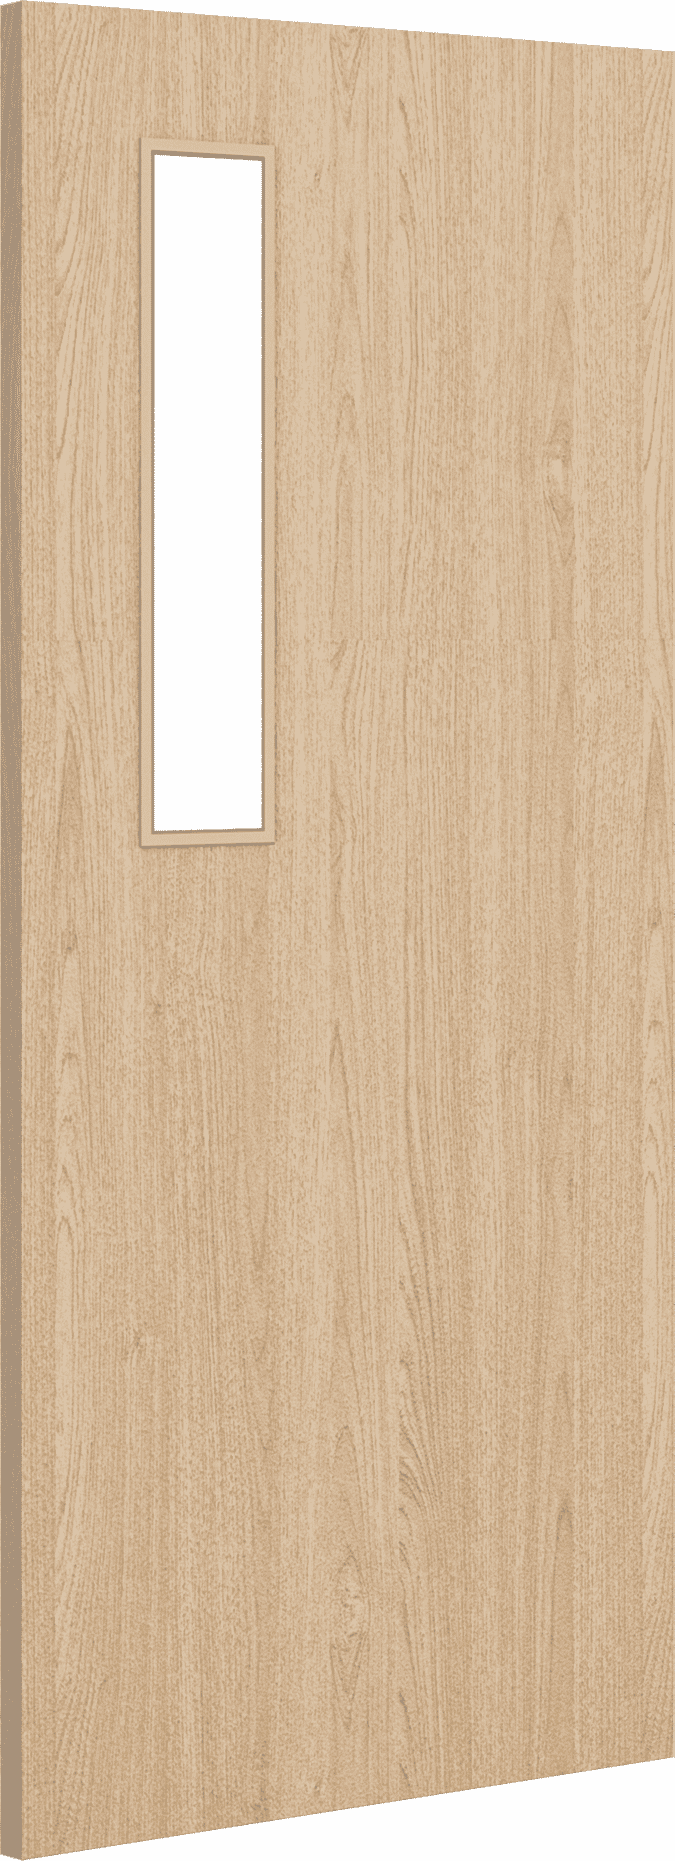 2040mm x 926mm x 44mm Architectural Oak 08 Clear Glazed - Prefinished FD30 Fire Door Blank